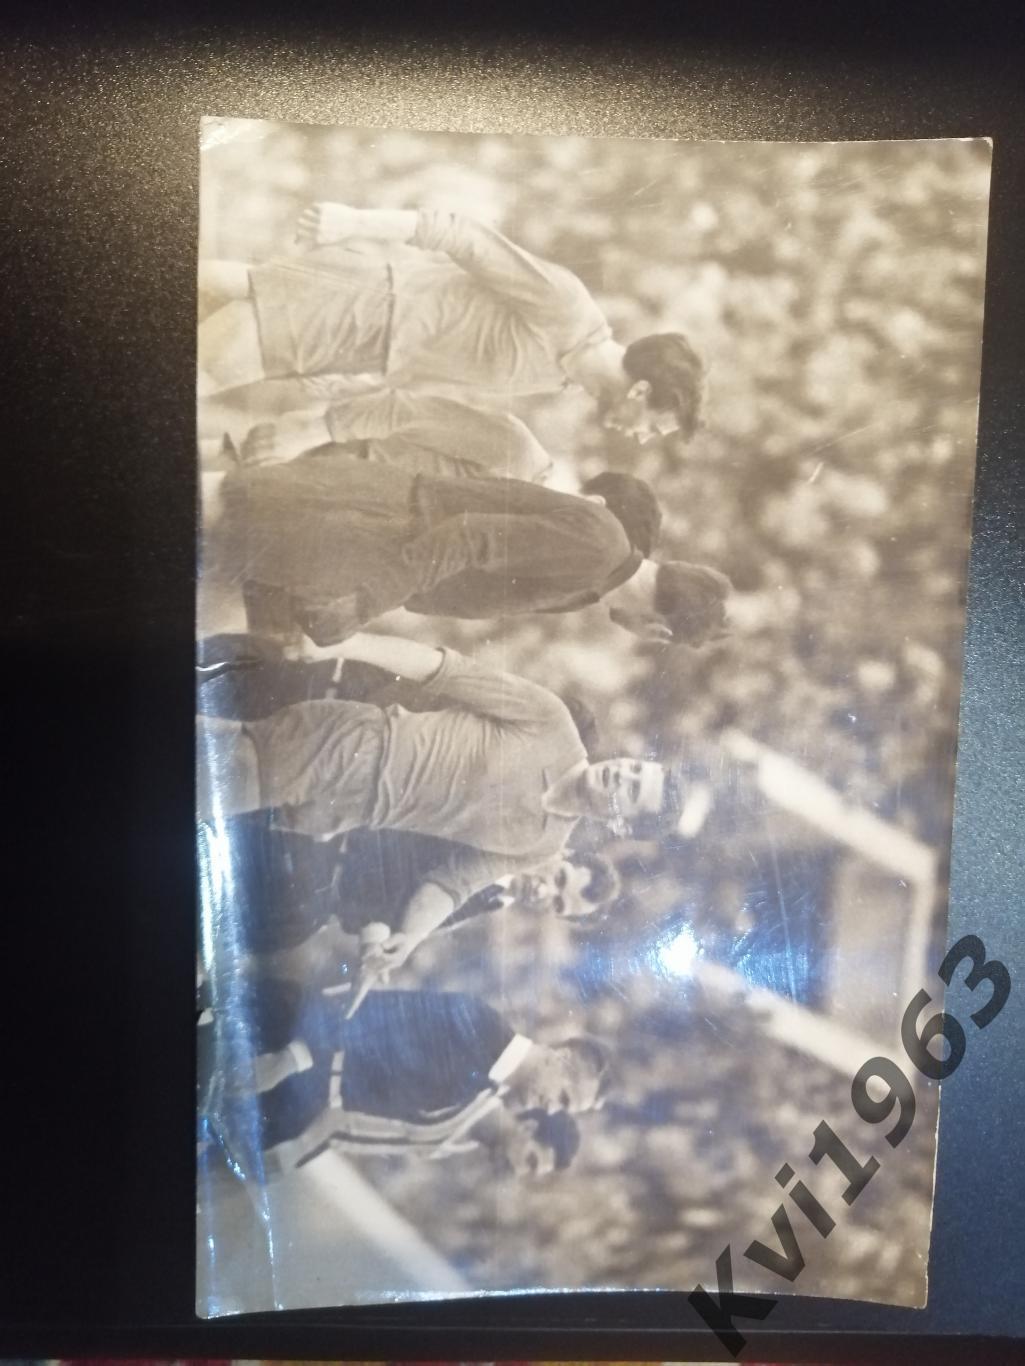 Фото с матча сборная СССР - Гремио Бразилия 1962 Яшин,Иванов, Понедельник